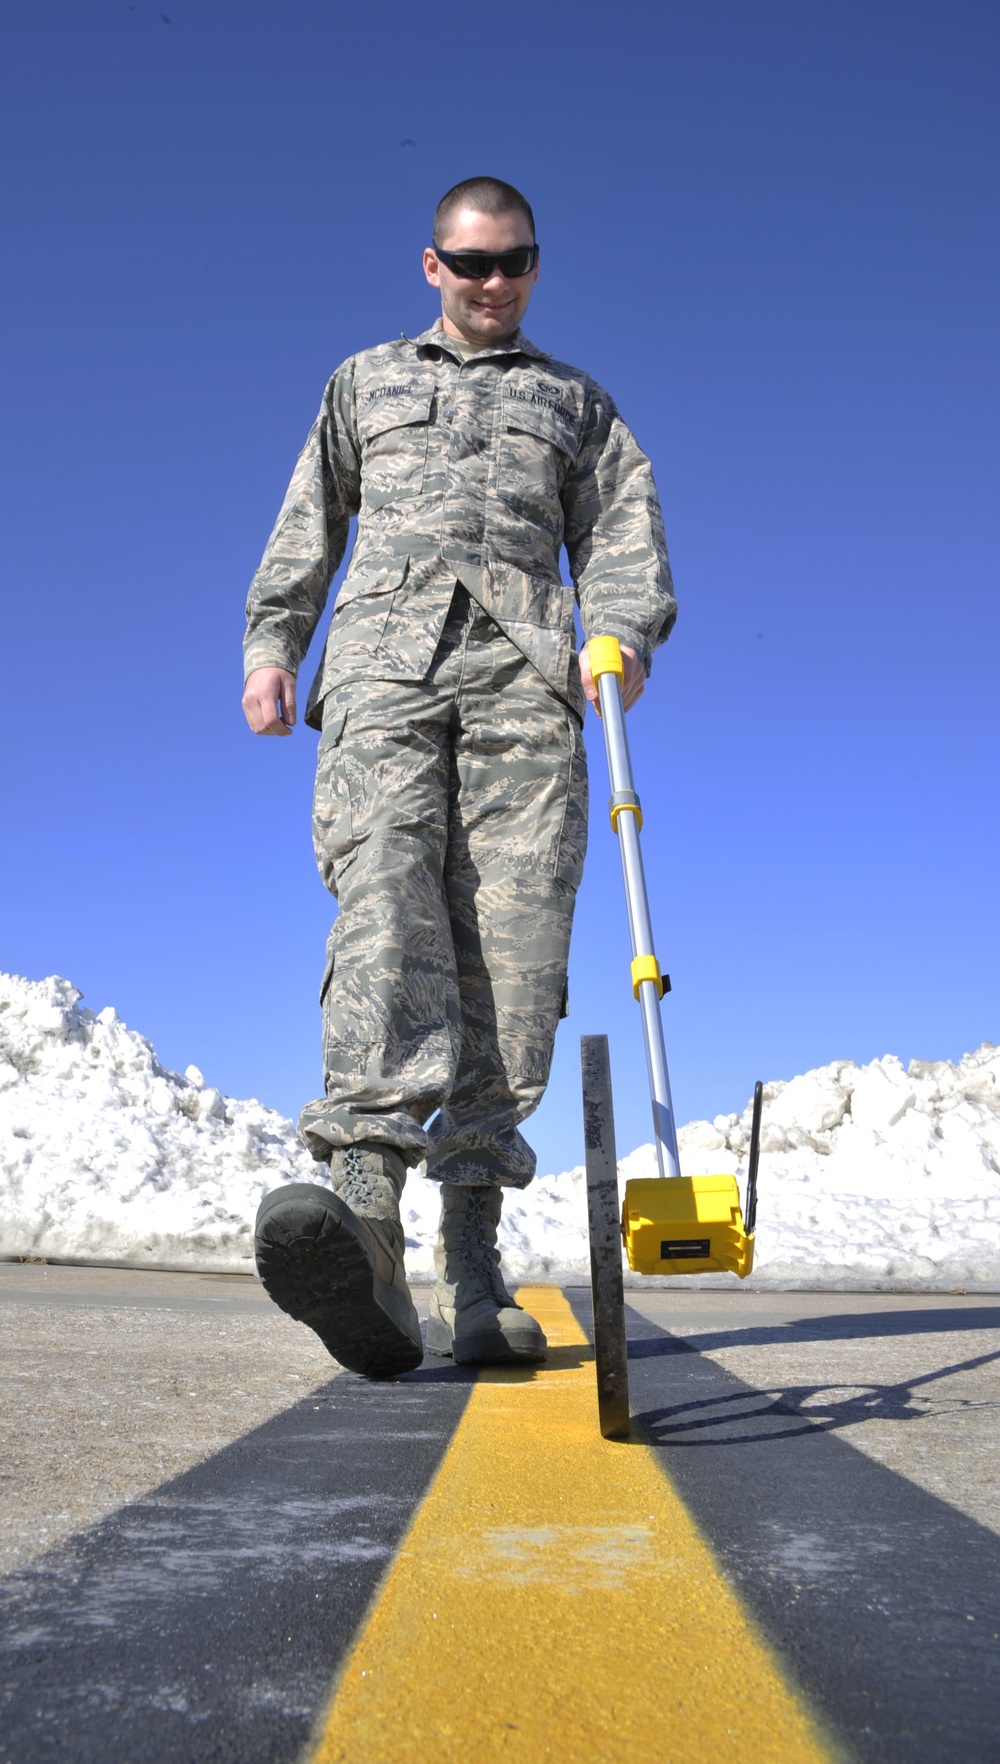 Airman Measures distance between snow and flightline